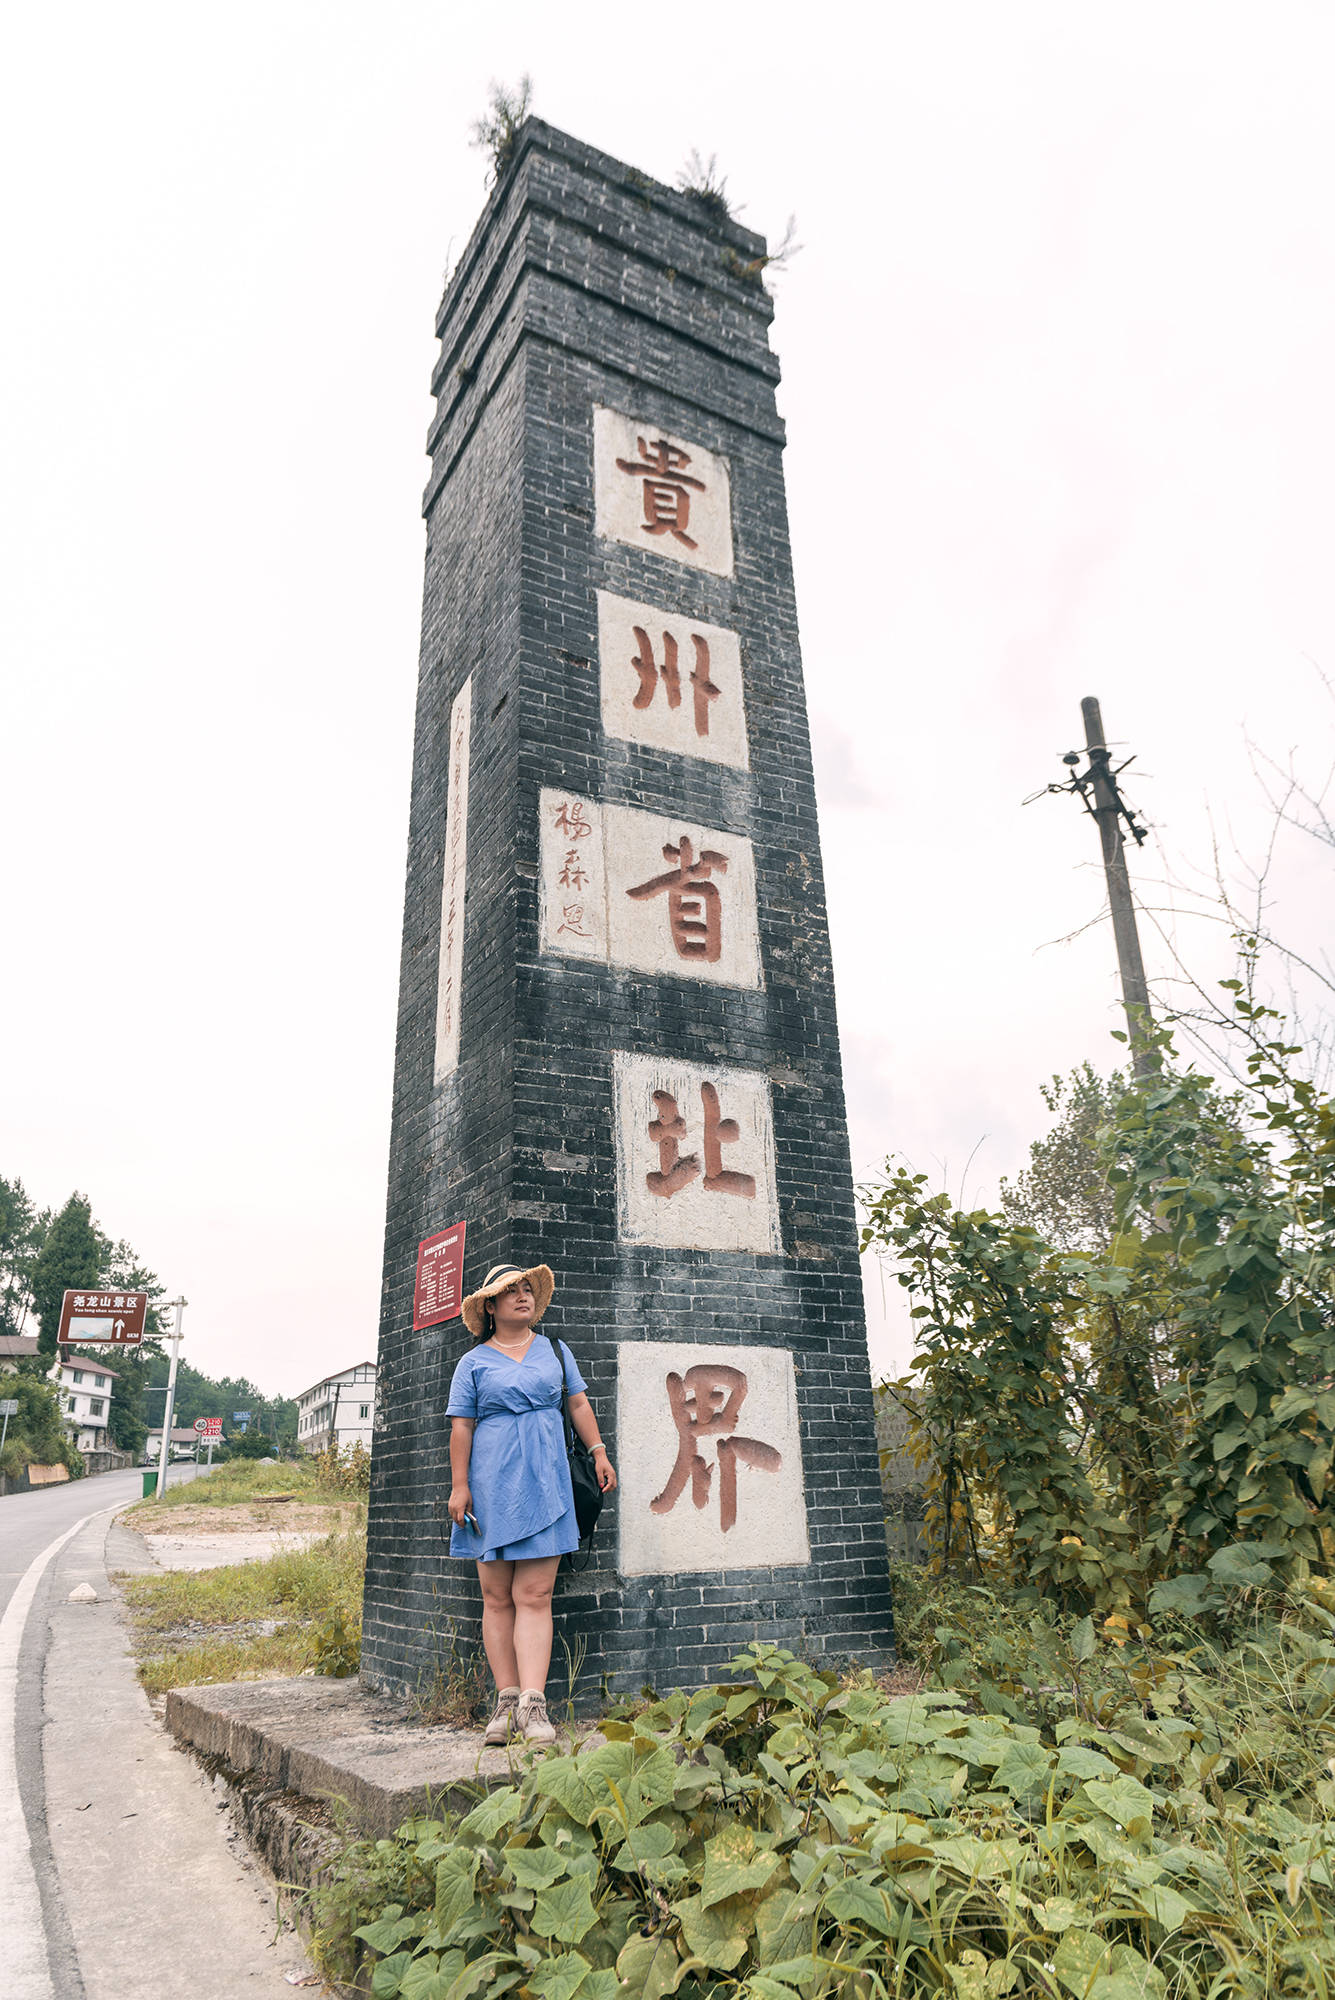 原创重庆与贵州交界立有1碑,两侧人家每日跨省旅游,这块土地故事多